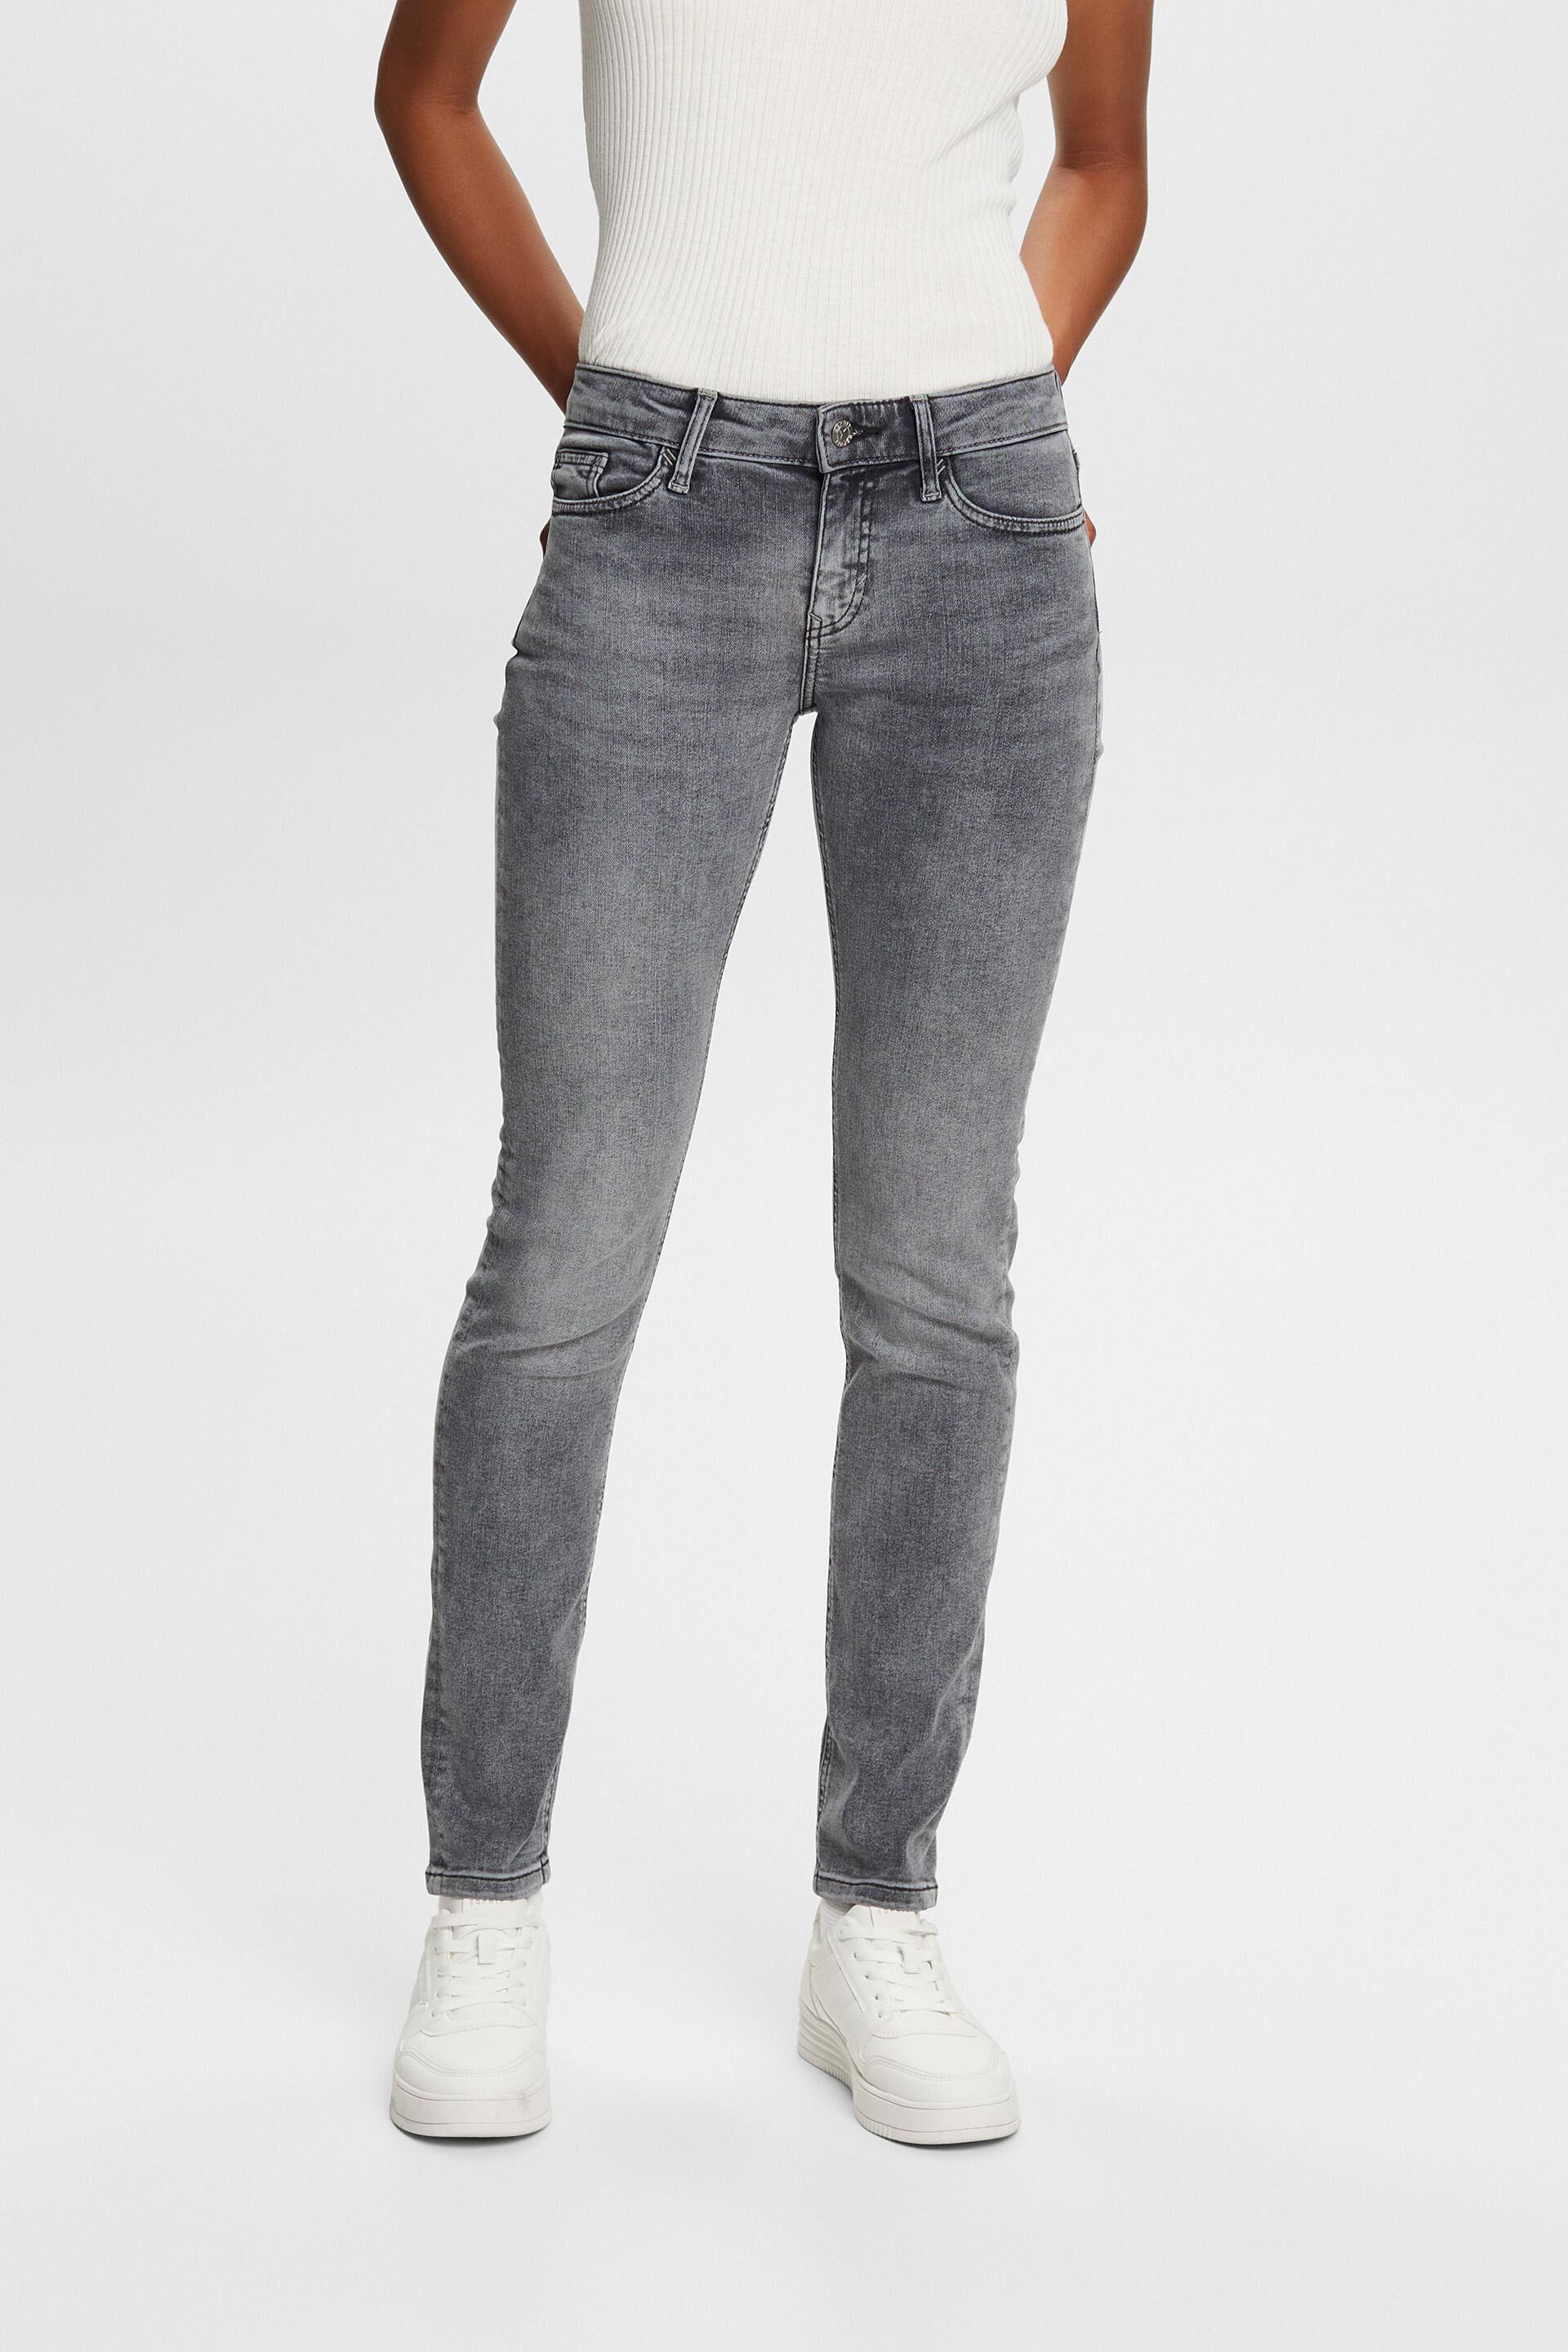 Esprit Jeans Mid-Rise Slim